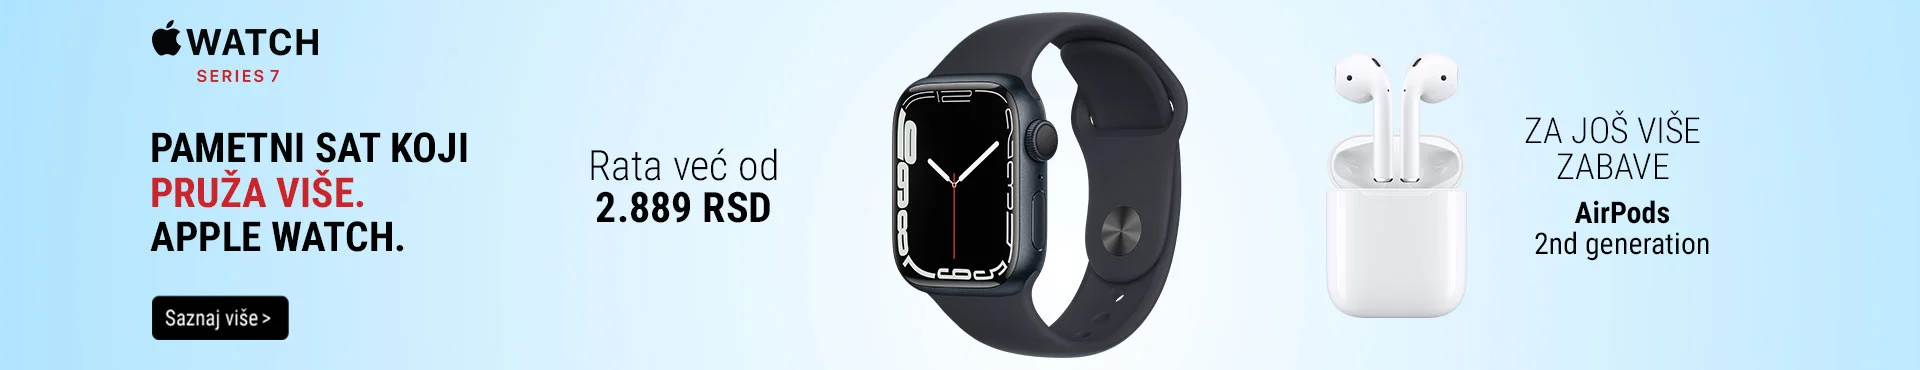 Apple Watch 7 promo januar